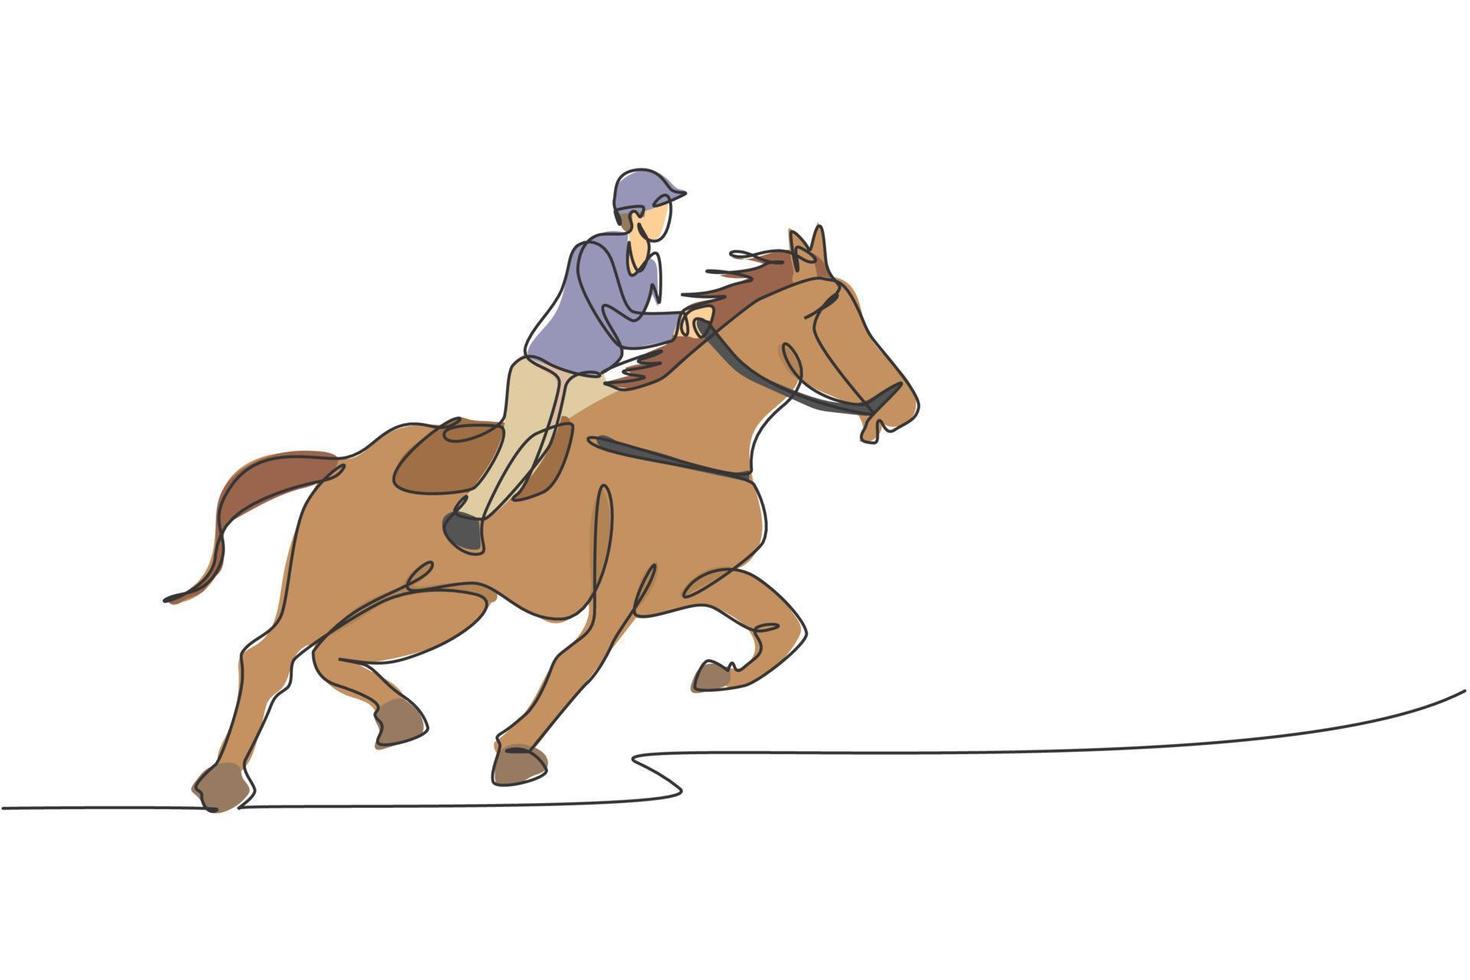 einzelne durchgehende Linienzeichnung eines jungen professionellen Reiters, der mit einem Pferd um die Ställe läuft. Reitsport-Trainingsprozesskonzept. trendige einzeilige zeichnen design-vektorillustration vektor